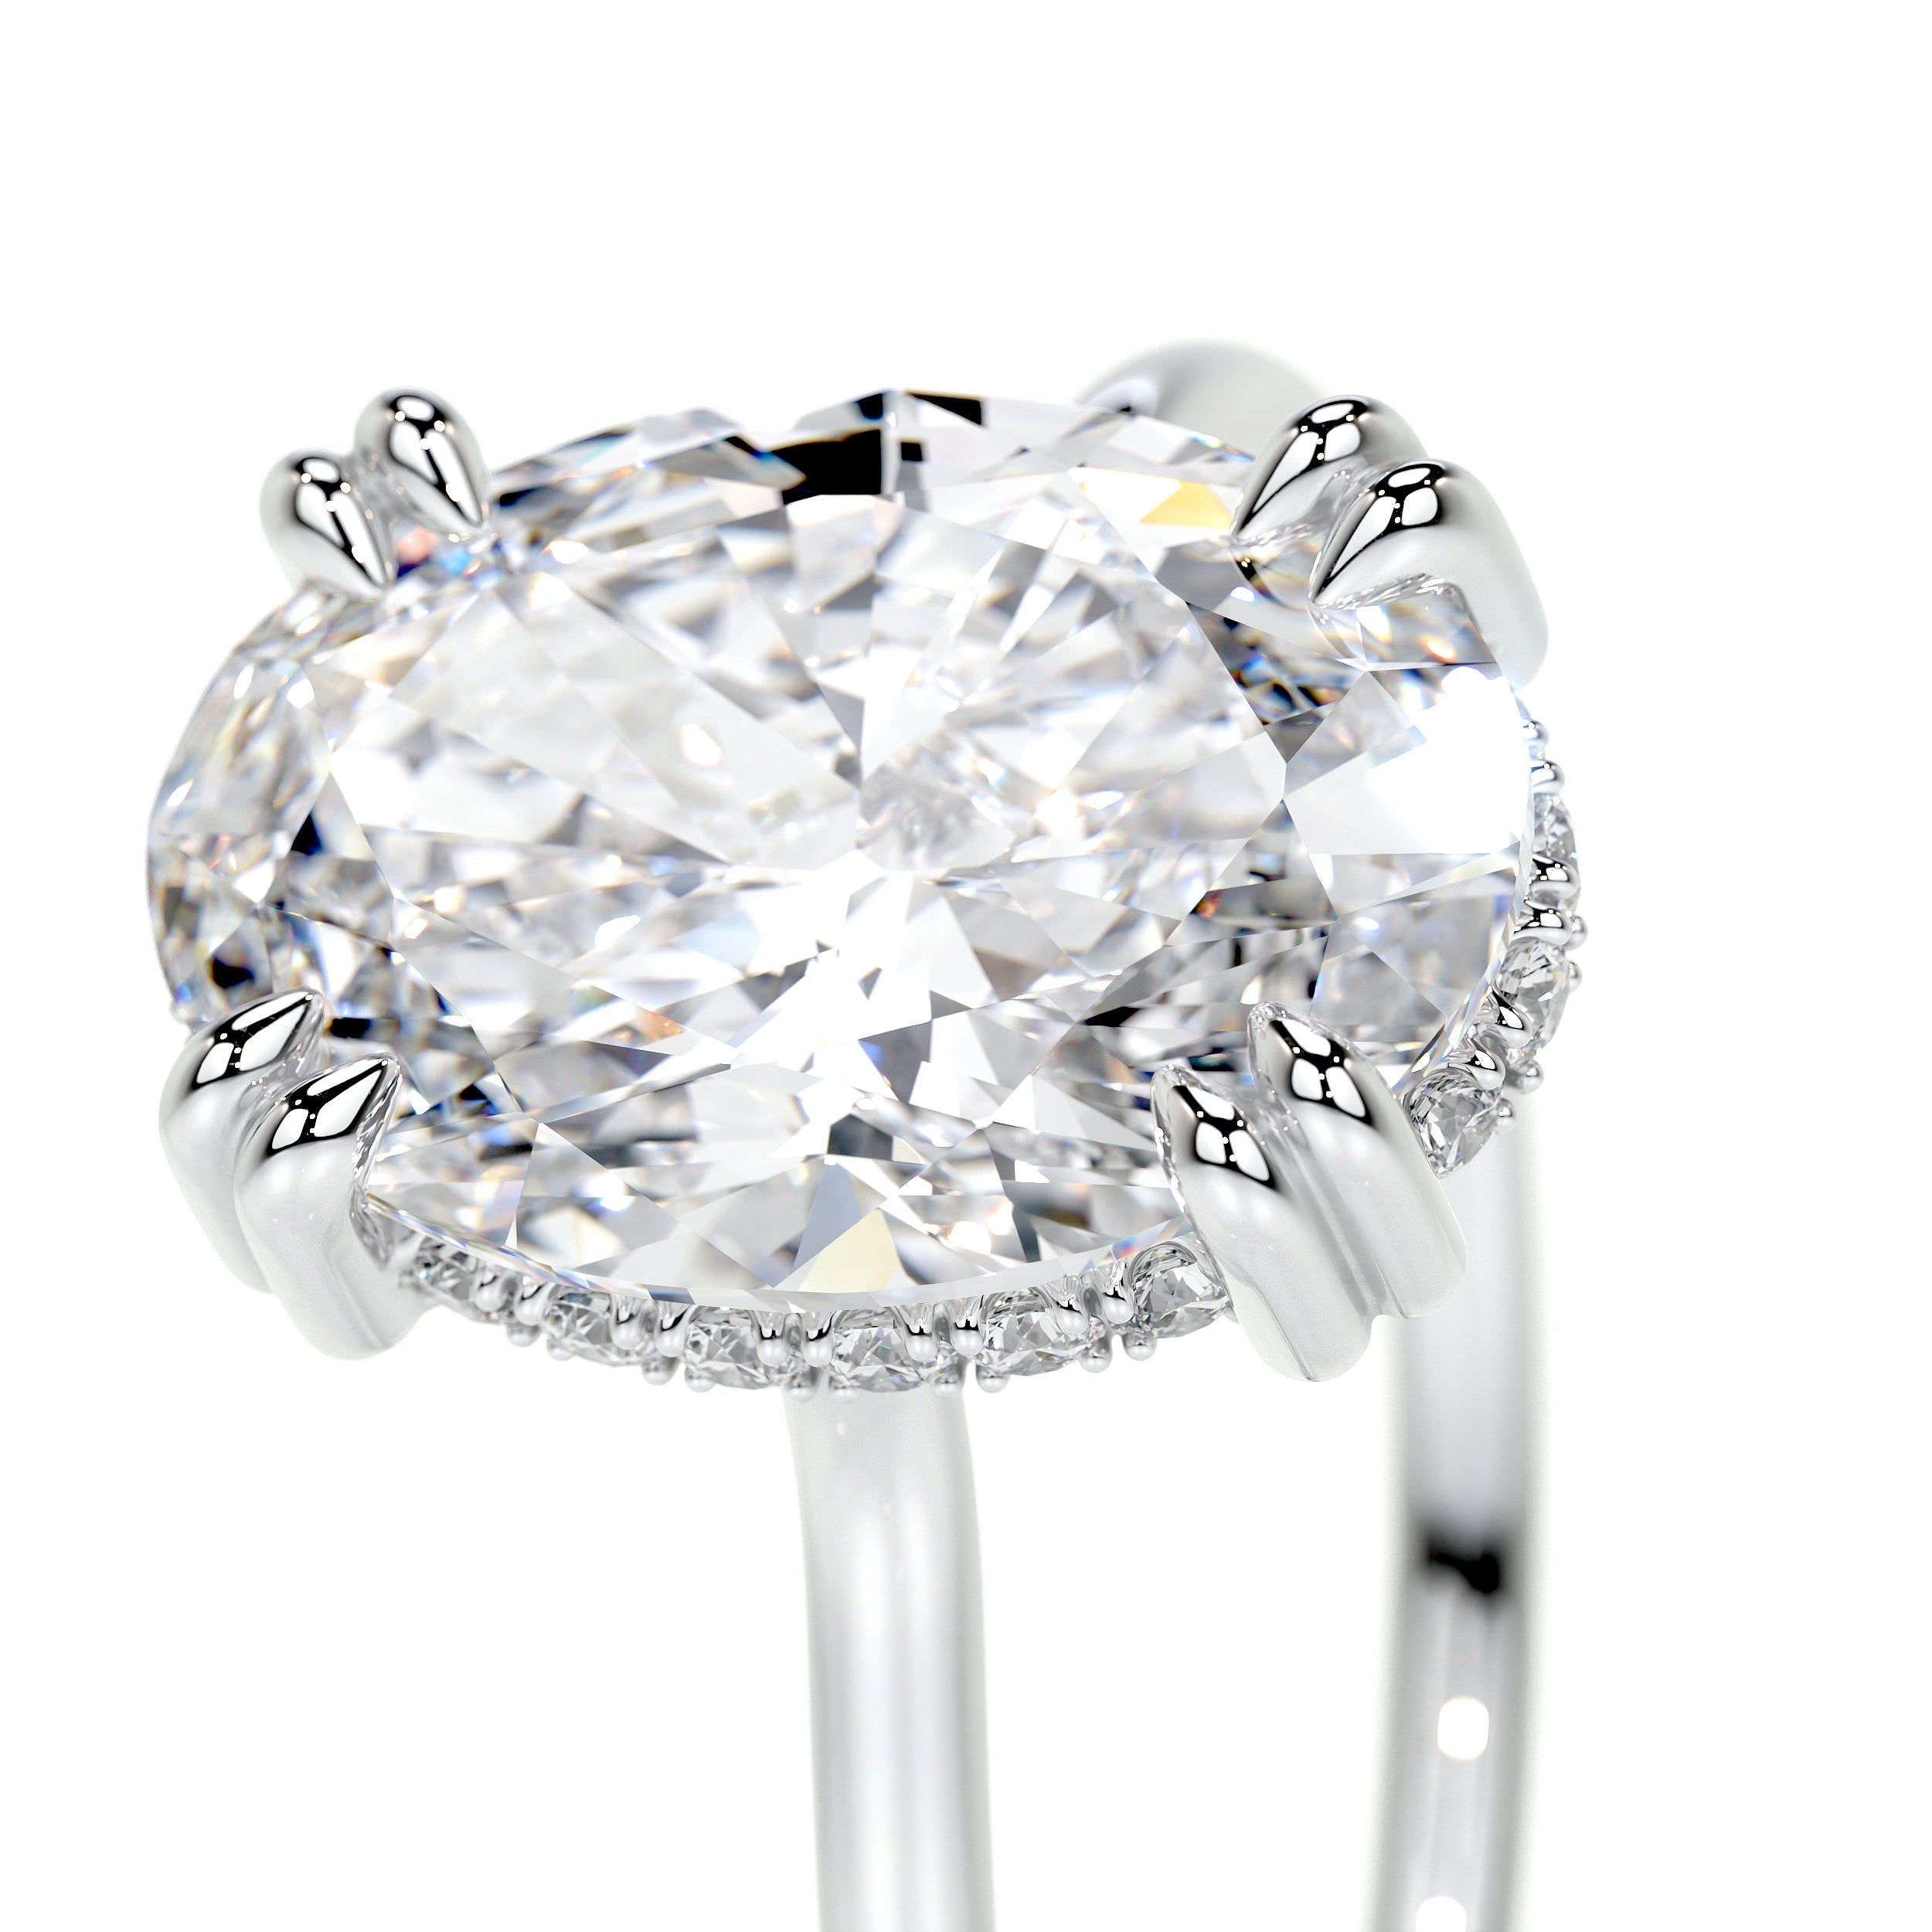 Harriet Lab Grown Diamond Ring   (3.1 Carat) -14K White Gold